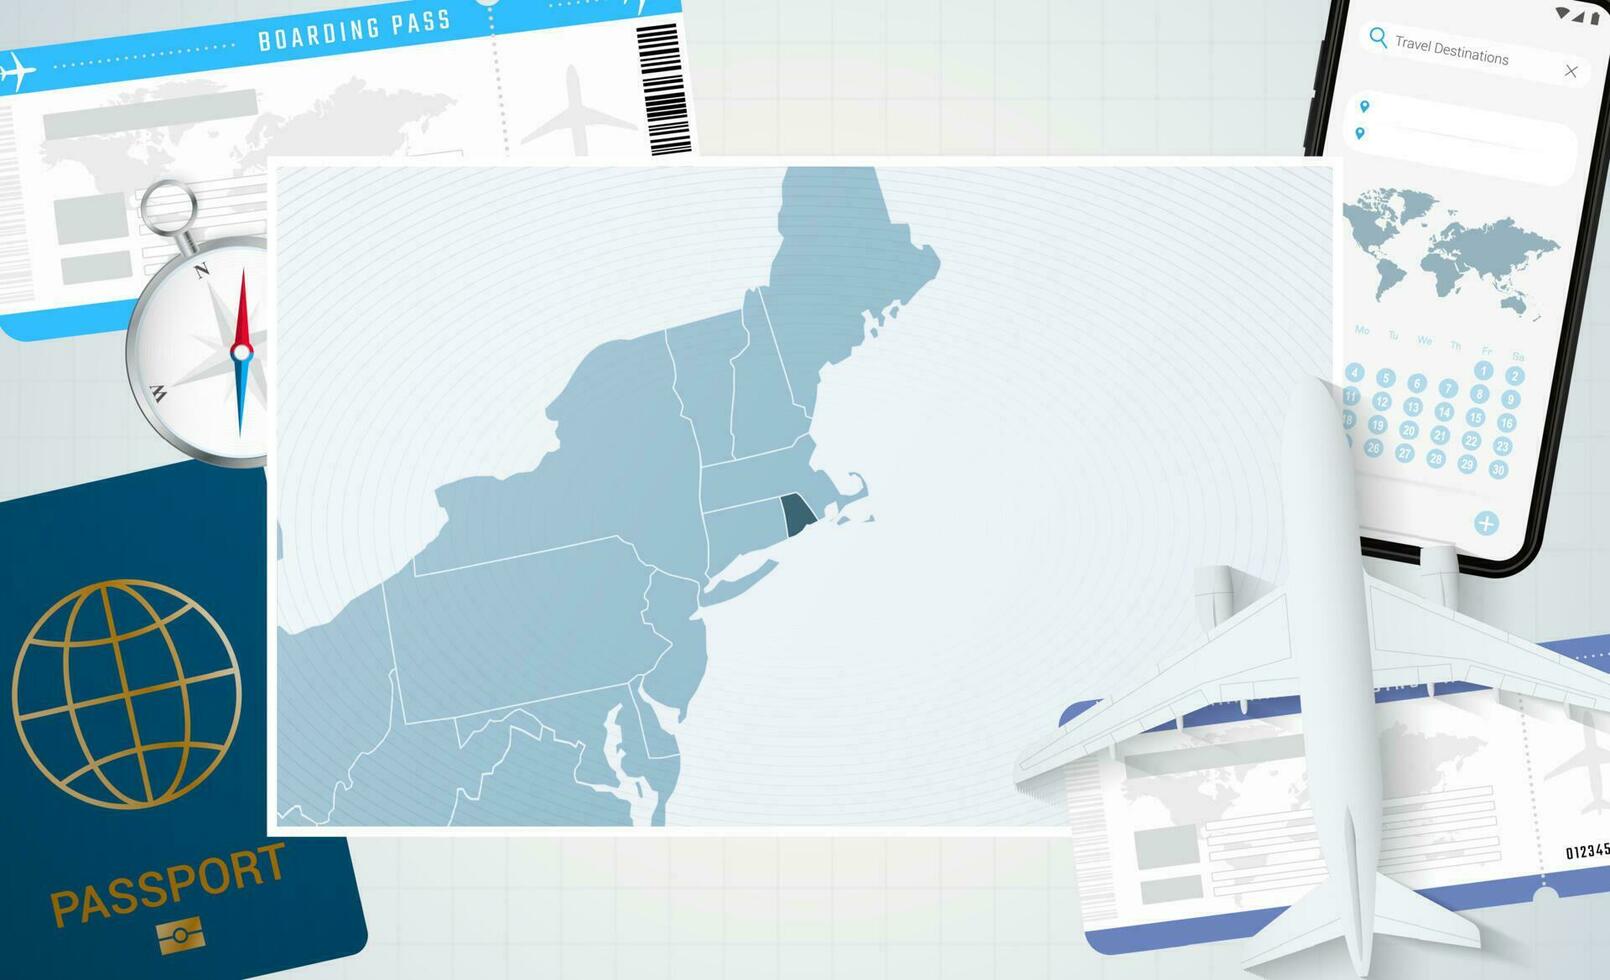 reis naar Rhode eiland, illustratie met een kaart van Rhode eiland. achtergrond met vliegtuig, cel telefoon, paspoort, kompas en kaartjes. vector